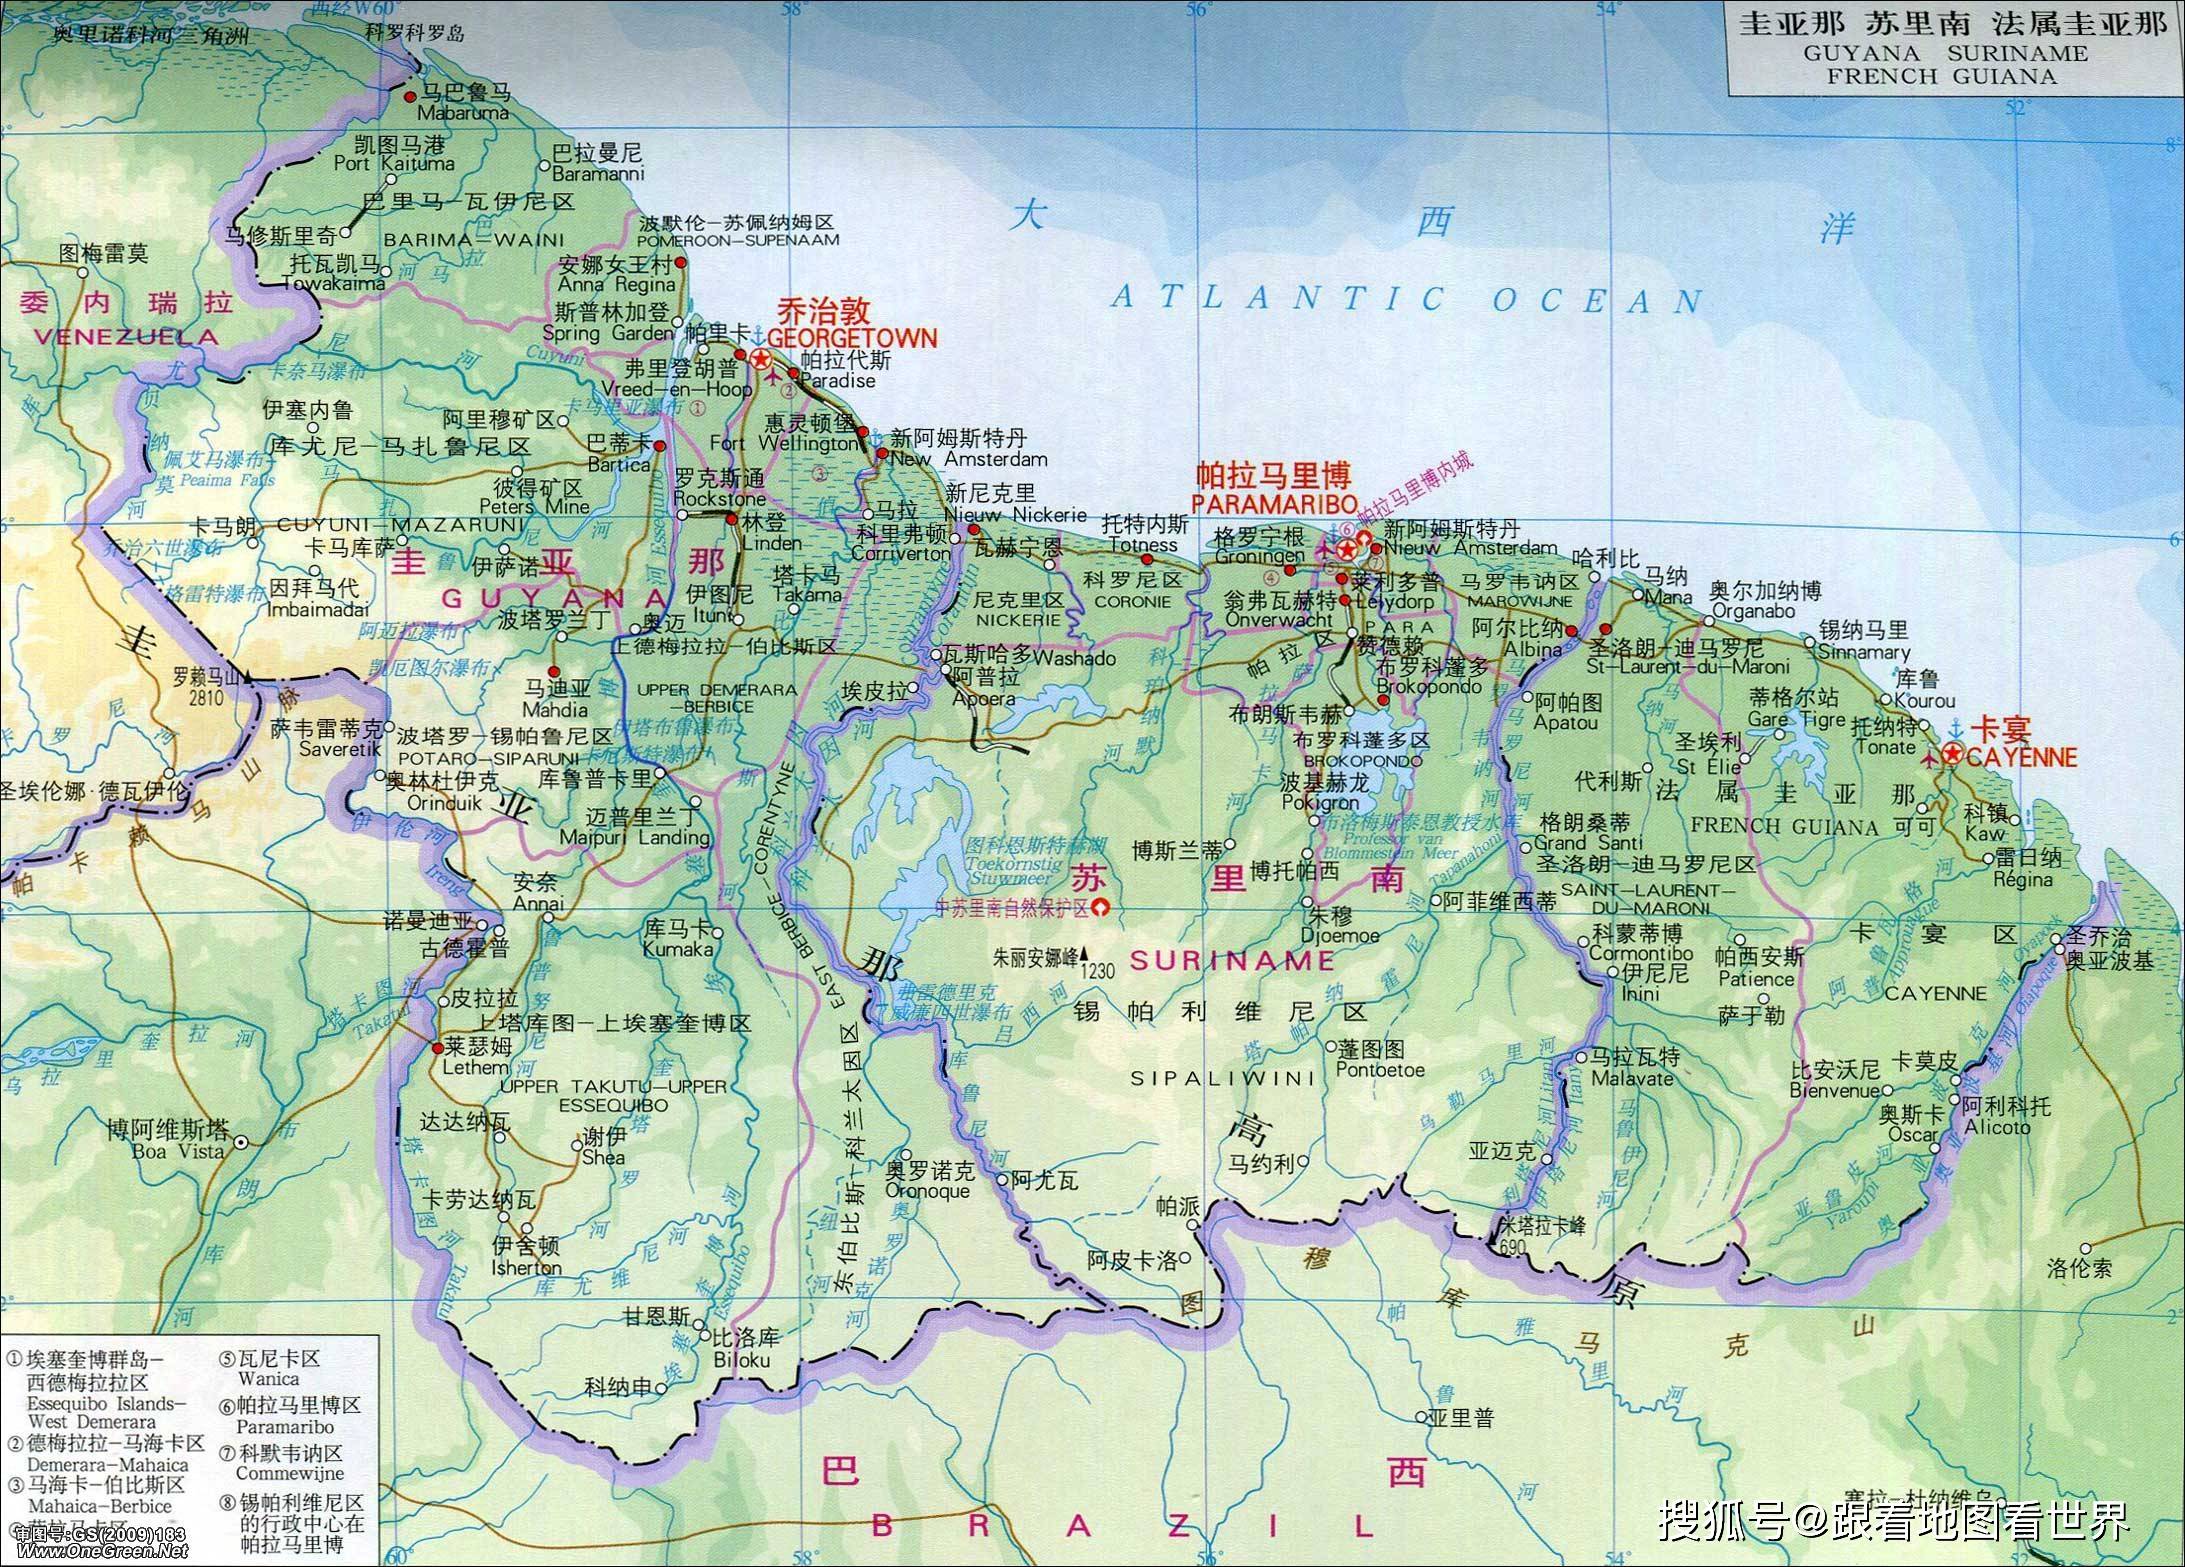 圭亚那面积214970平方公里,位于南美洲北部,是南美洲唯一的英语系国家